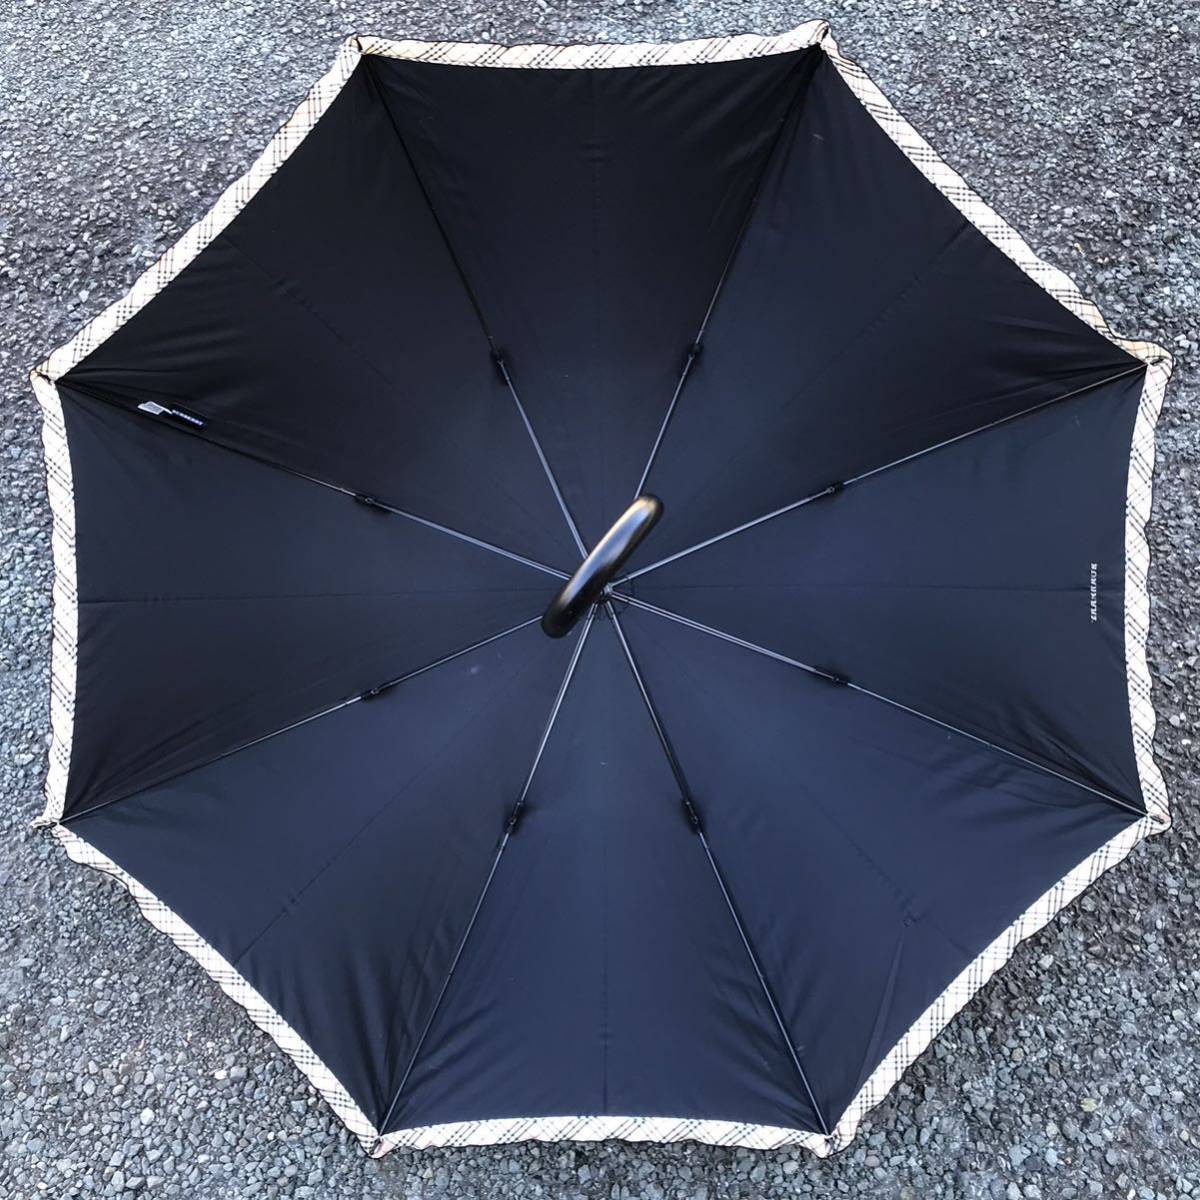 【バーバリー】本物 BURBERRY 傘 チェック柄 ドット模様 全長84cm 晴雨兼用 雨傘 アンブレラ 雨傘 日傘 長傘 メンズ レディース_画像6